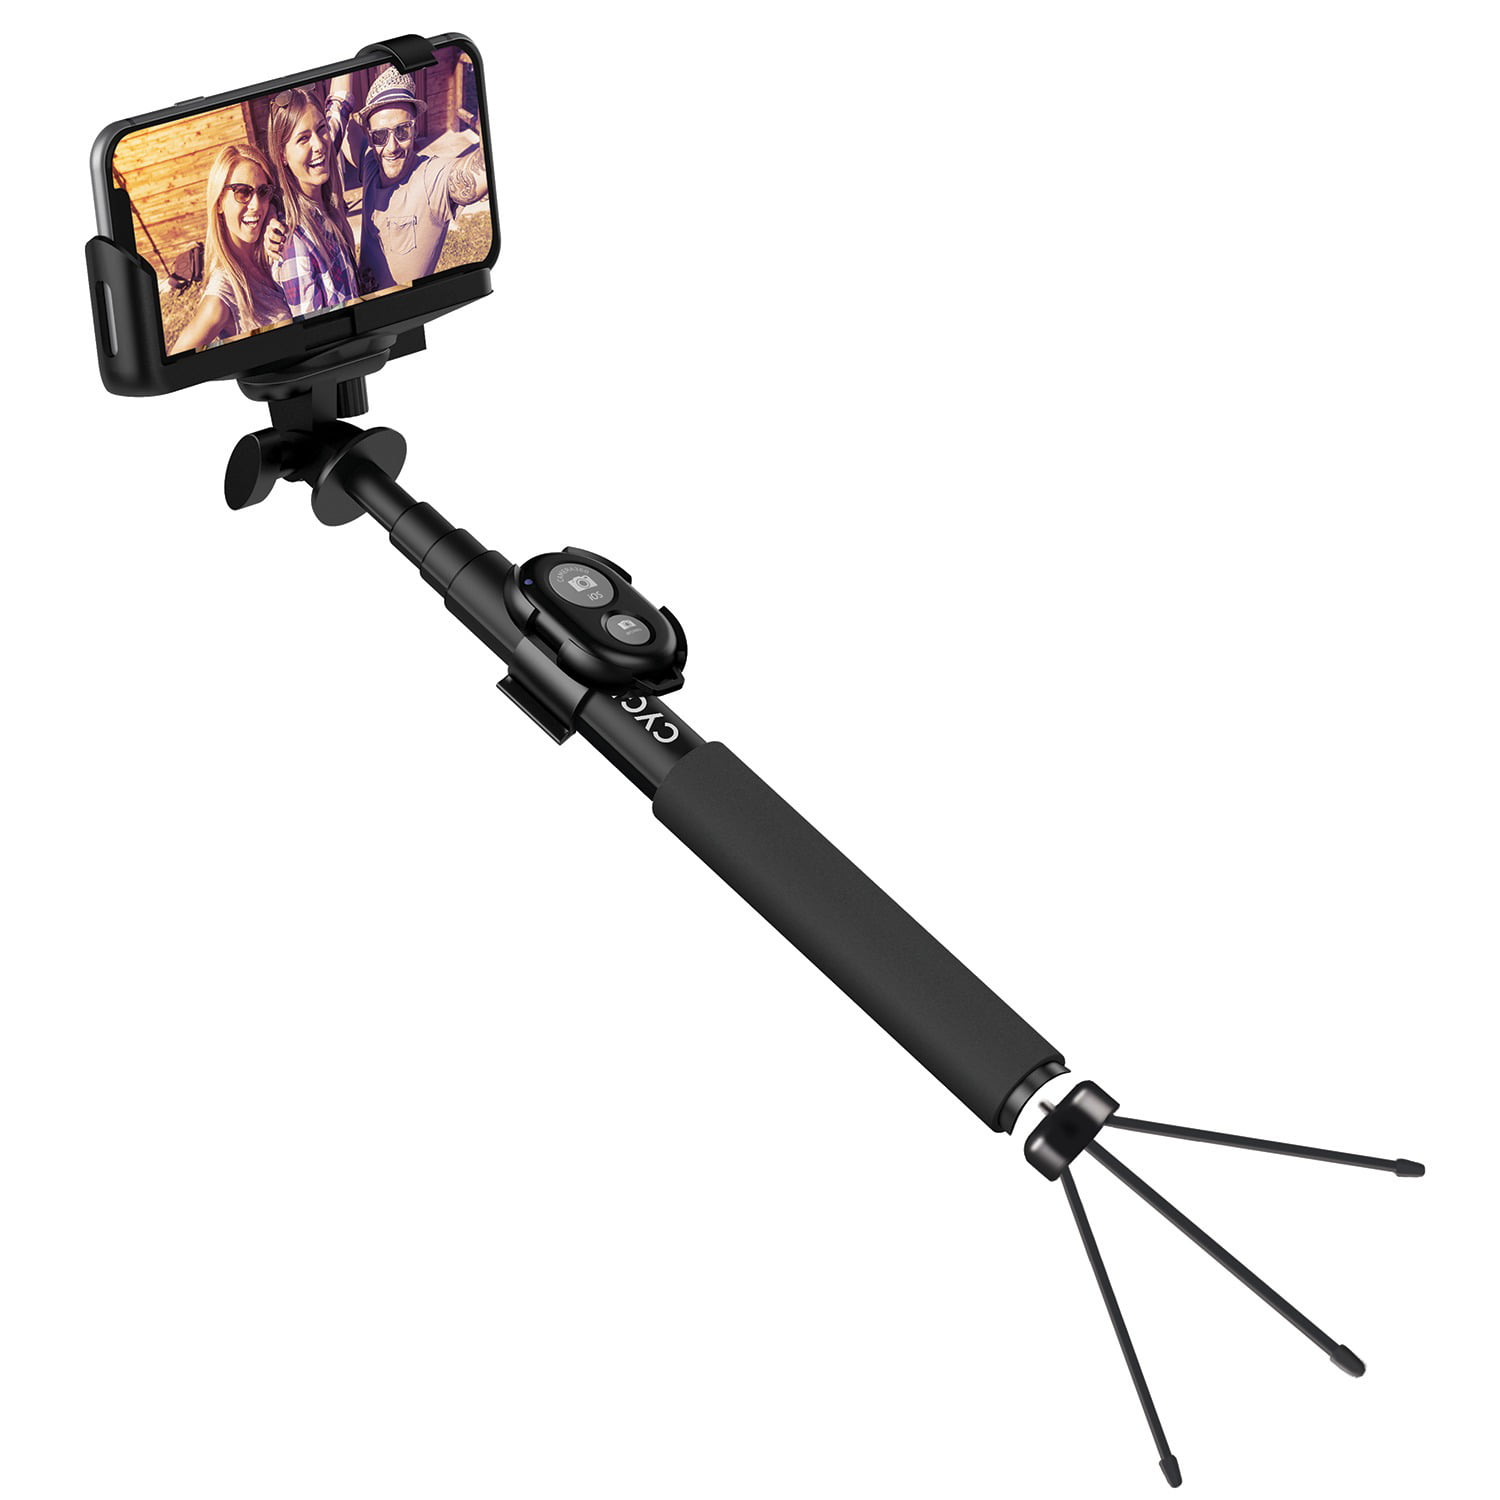 Selfie Stick Monkeystick SELMONKEYY Gul Bluetooth, inkl. smarthpone-hållare